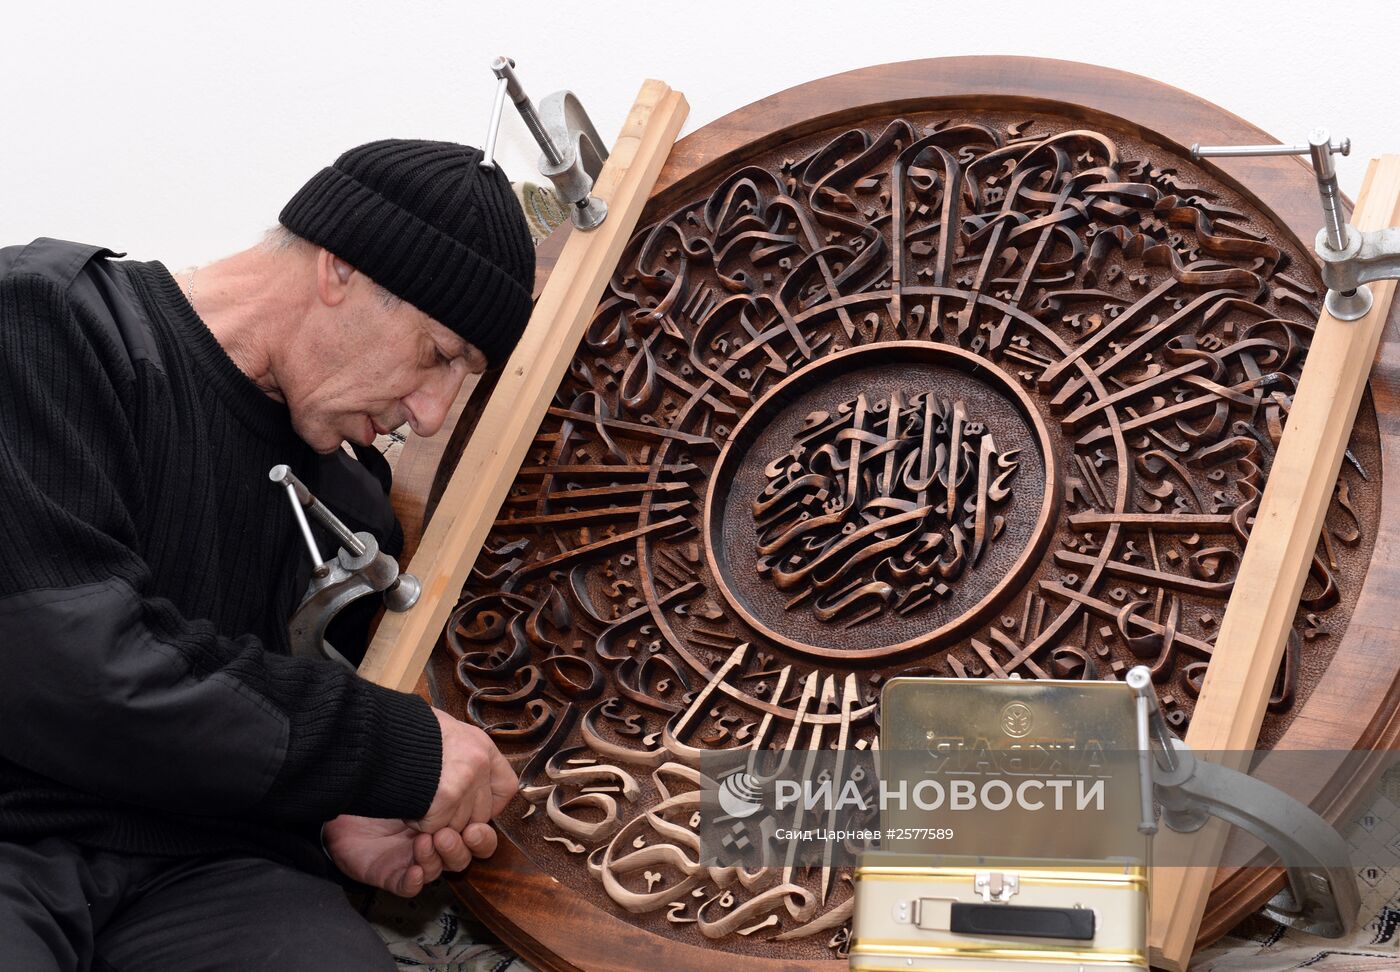 Мастера декоративно-прикладного творчества Чеченской Республики